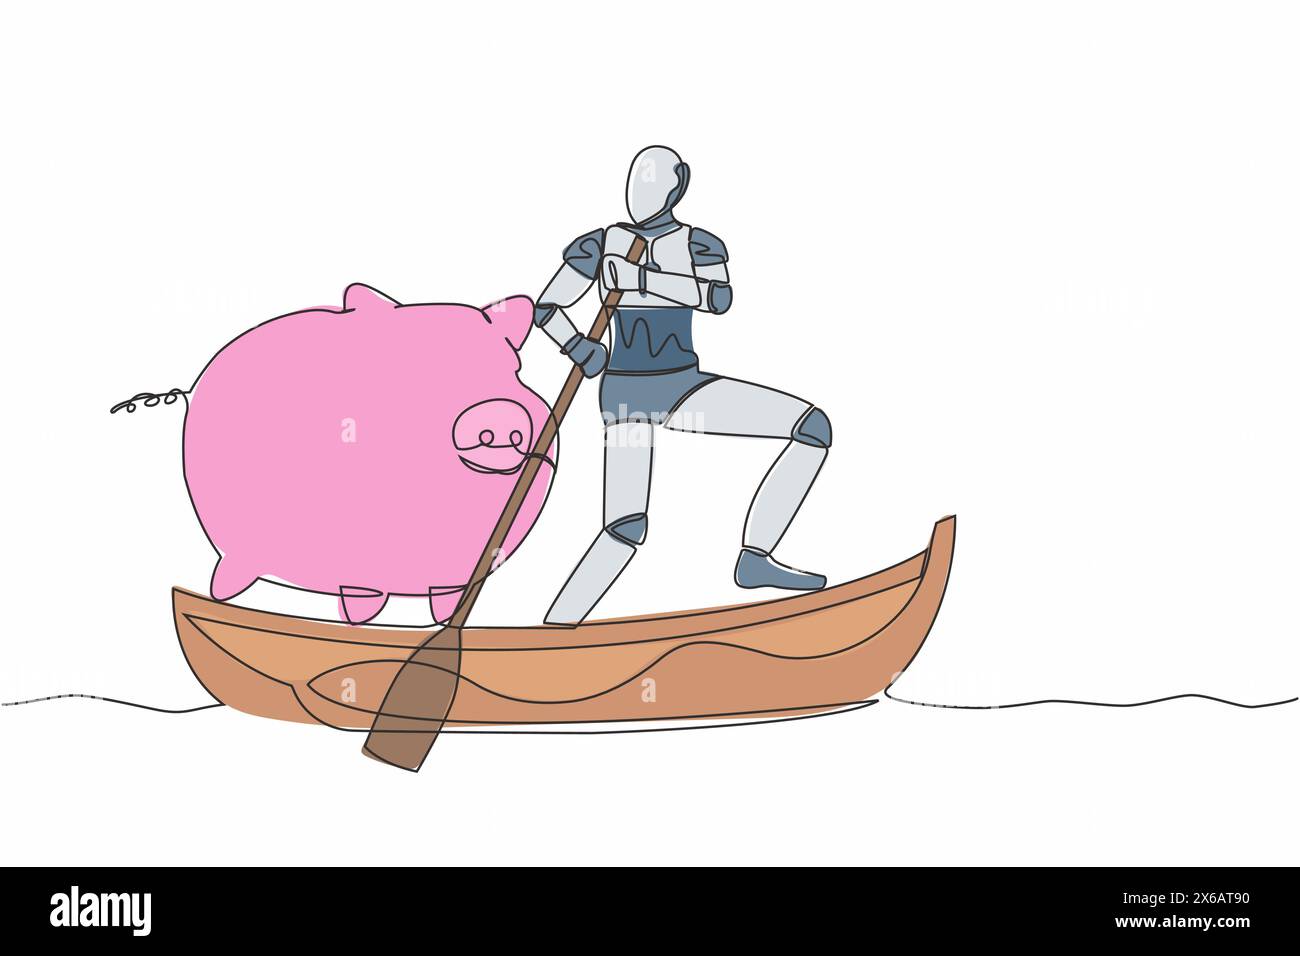 Robot de dessin continu d'une ligne naviguant loin sur le bateau avec tirelire. Objectifs d'économie économiser de l'argent dans la société de technologie. Organe cybernétique de robot humanoïde Illustration de Vecteur